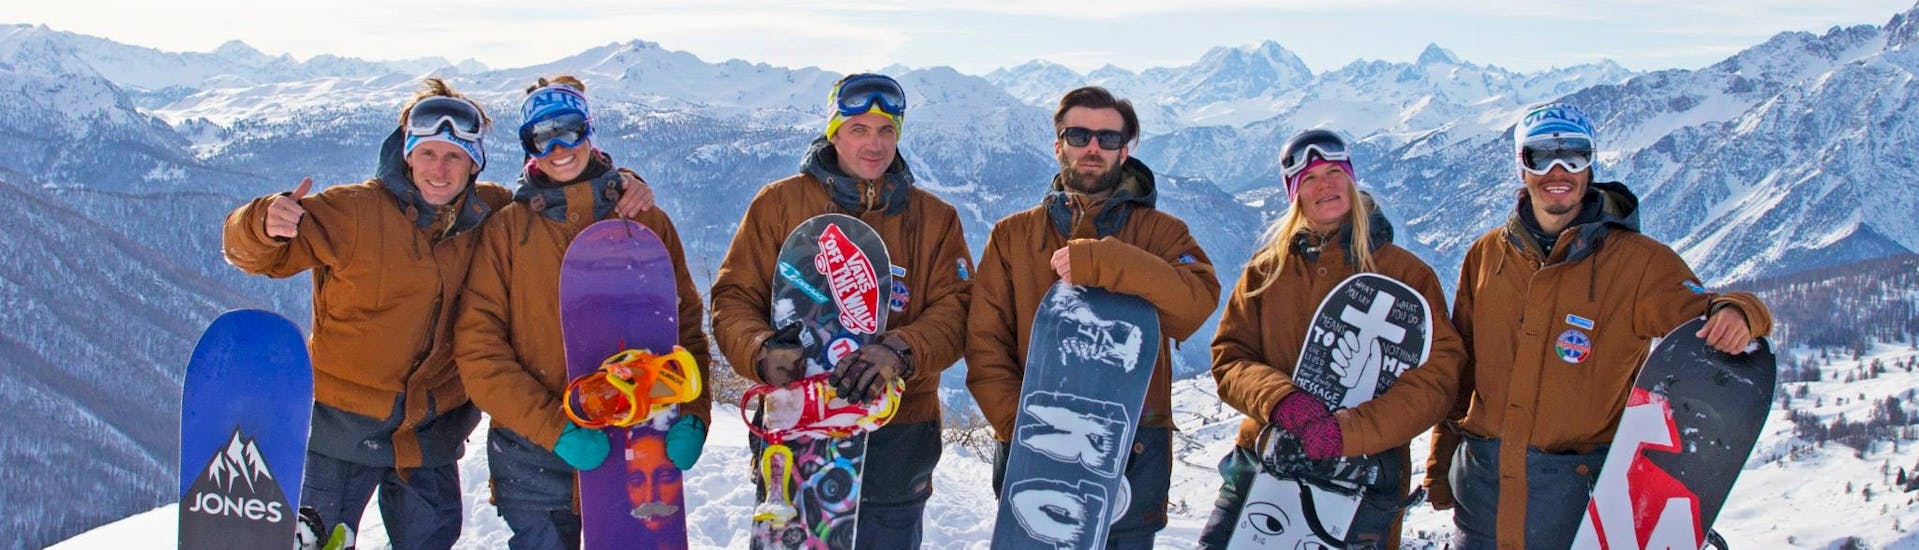 Snowboardlehrer posieren für ein Foto nach einem der Snowboardkurse für Kinder und Erwachsene aller Niveaus in Sauze d'Oulx.